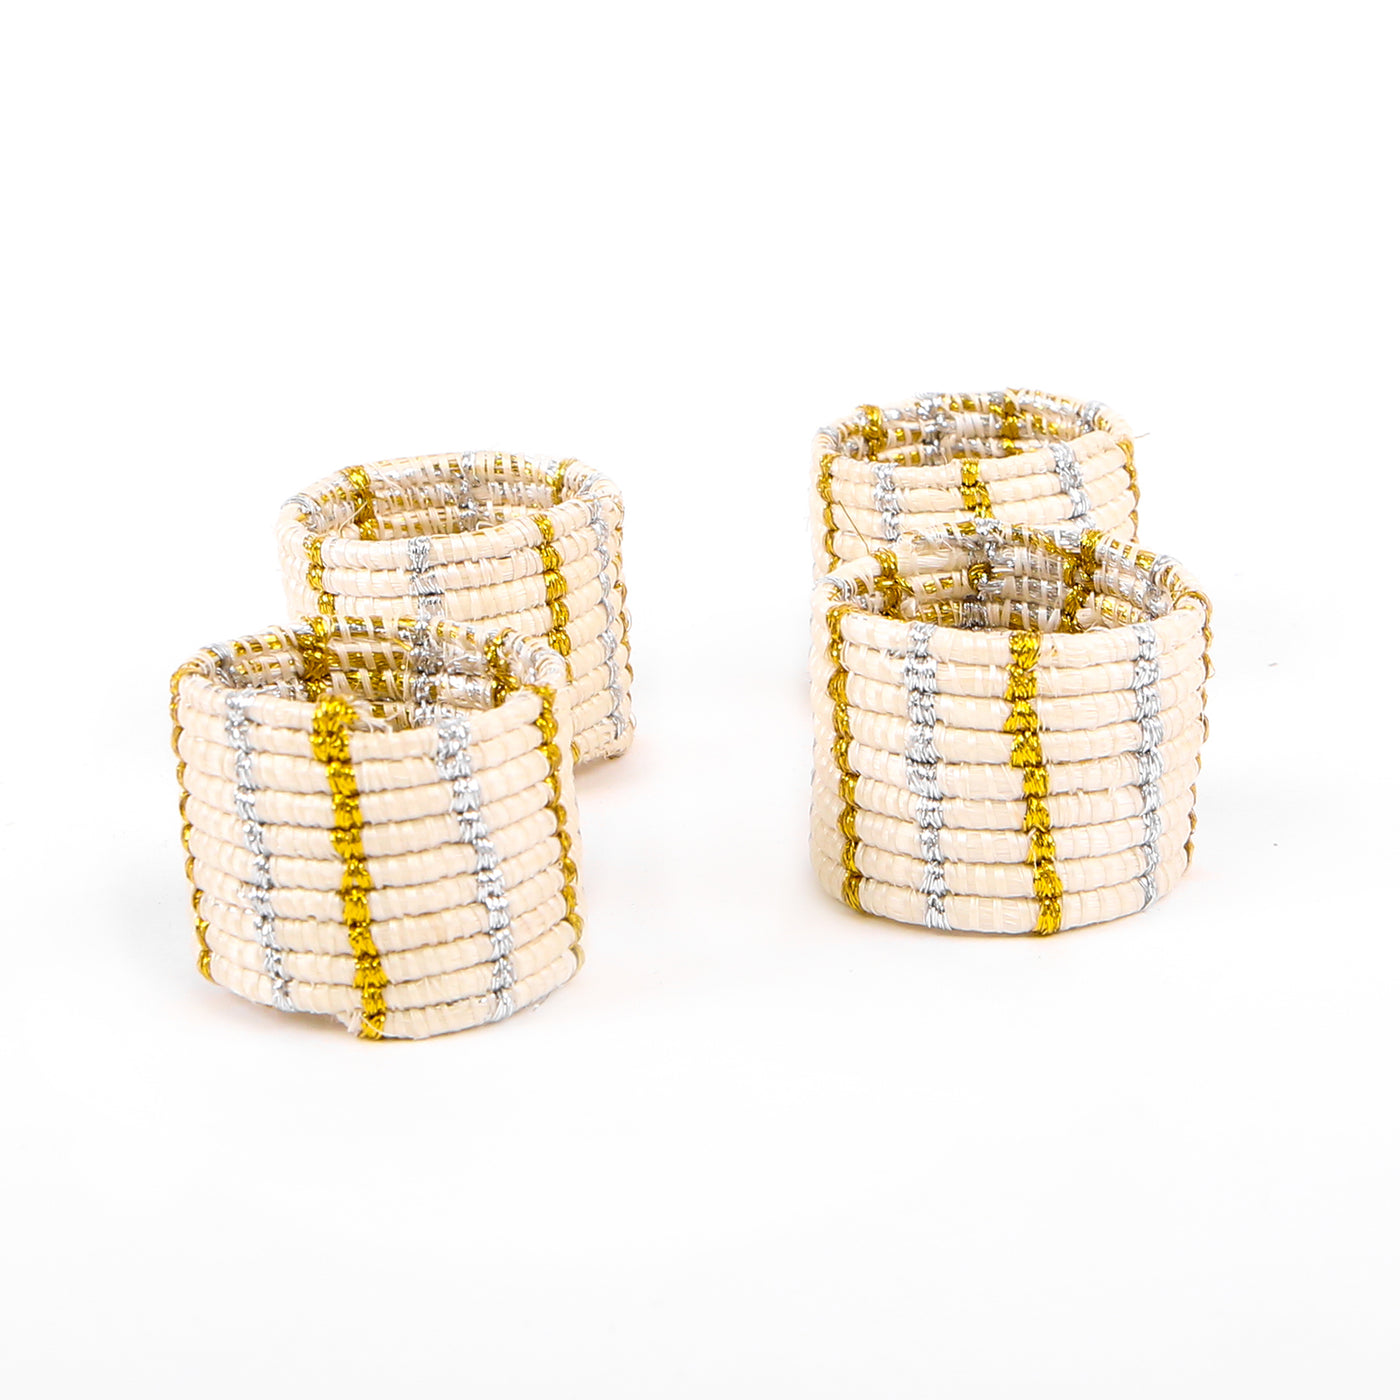 Metallic Gold + Silver Napkin Rings, Set of 4